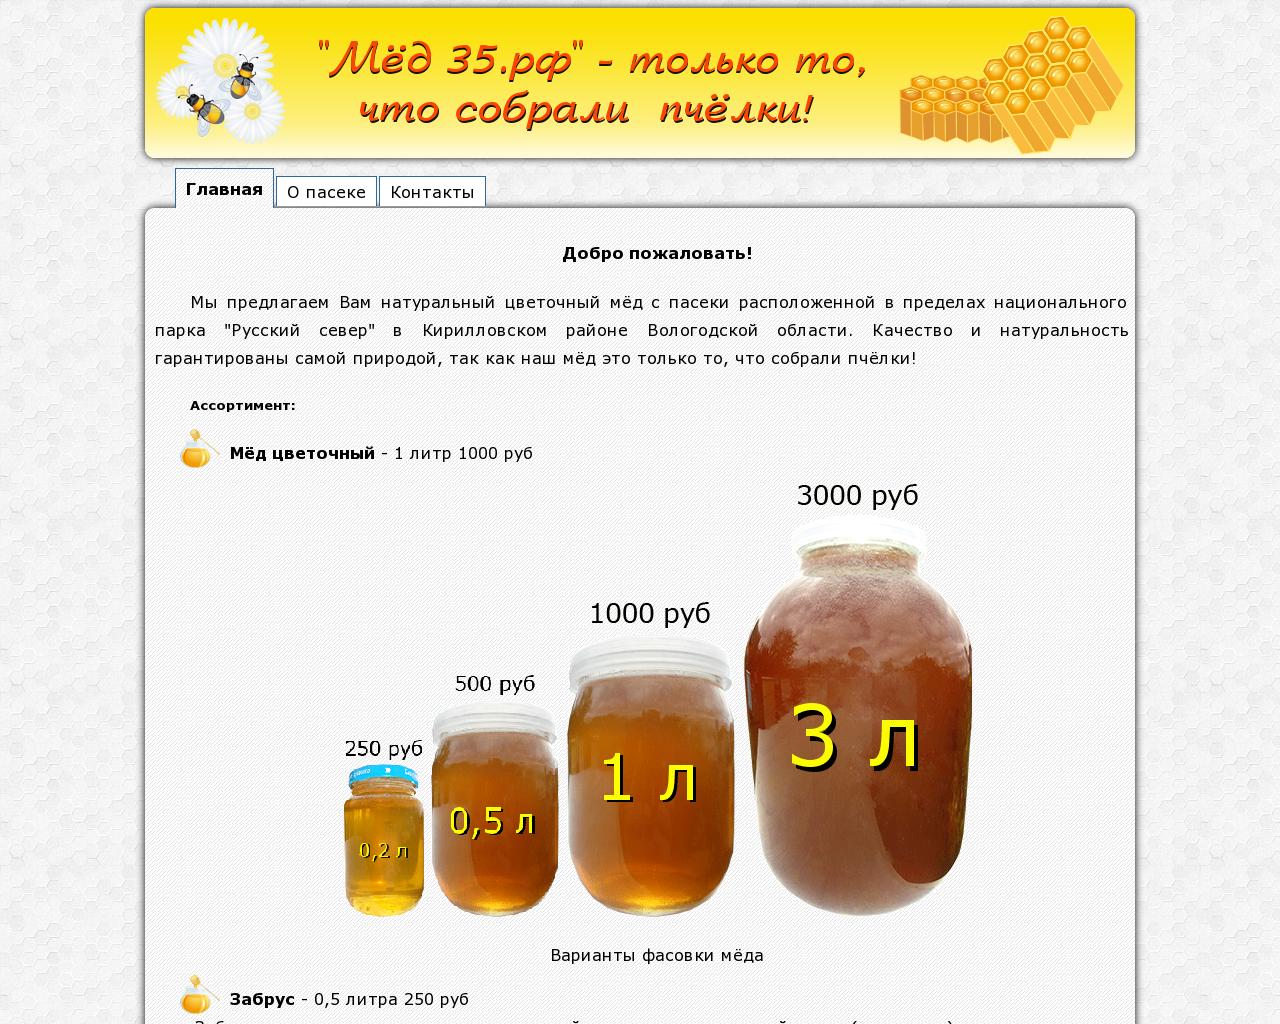 Изображение сайта мёд35.рф в разрешении 1280x1024